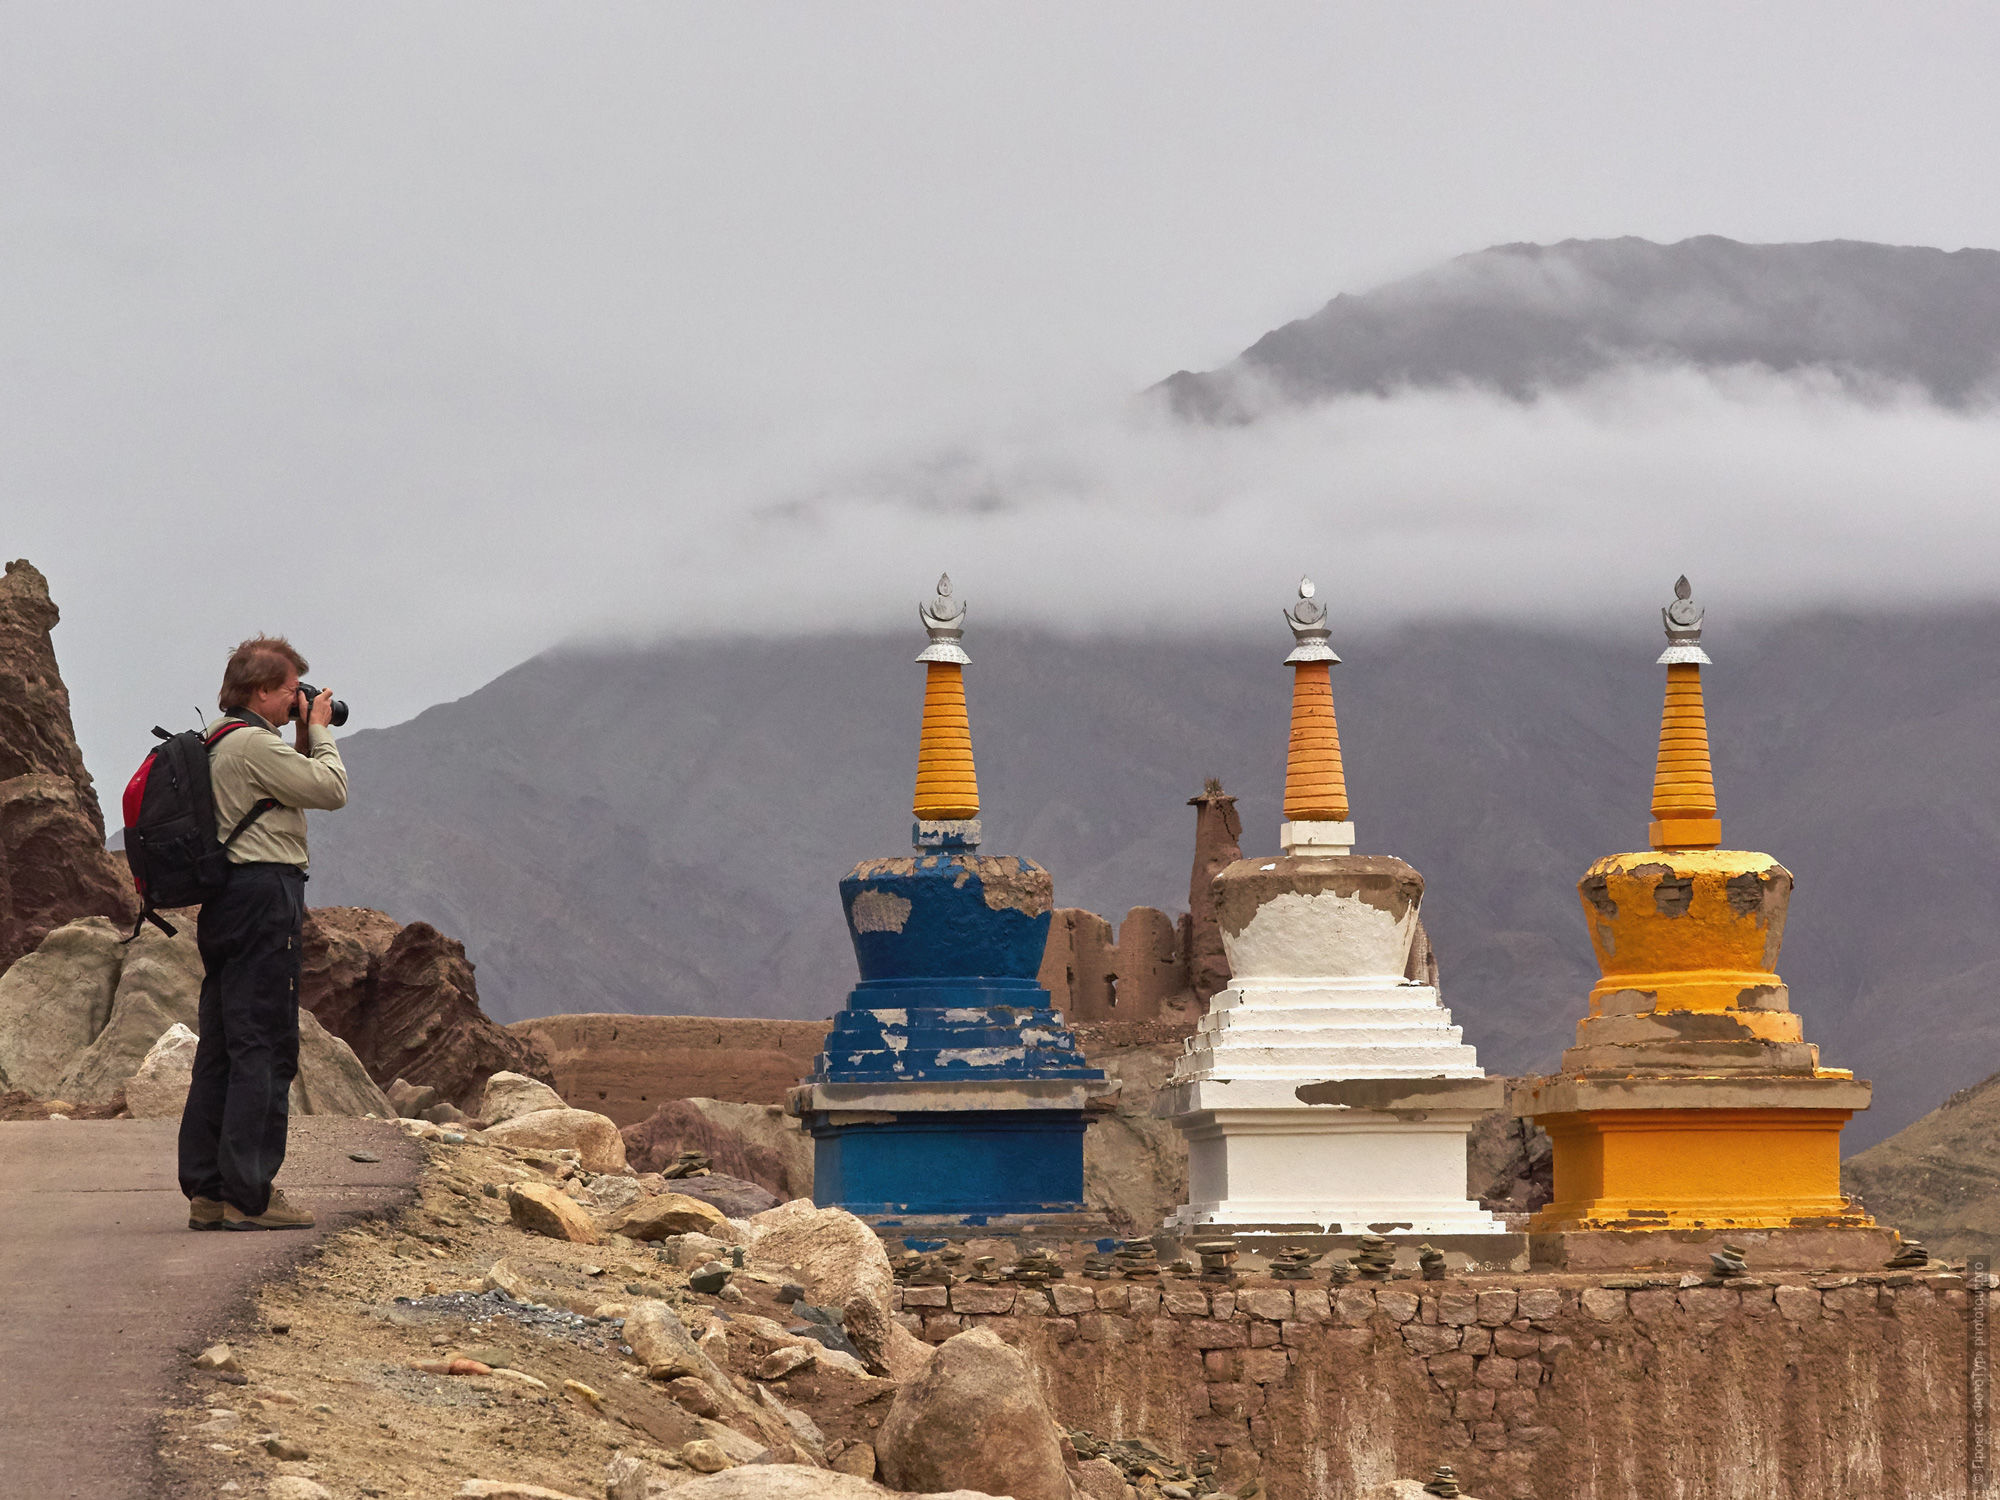 Александр фотографирует в буддийском монастыре Басго Гонпа, фототур Тибет Озерный, июль 2018 года.